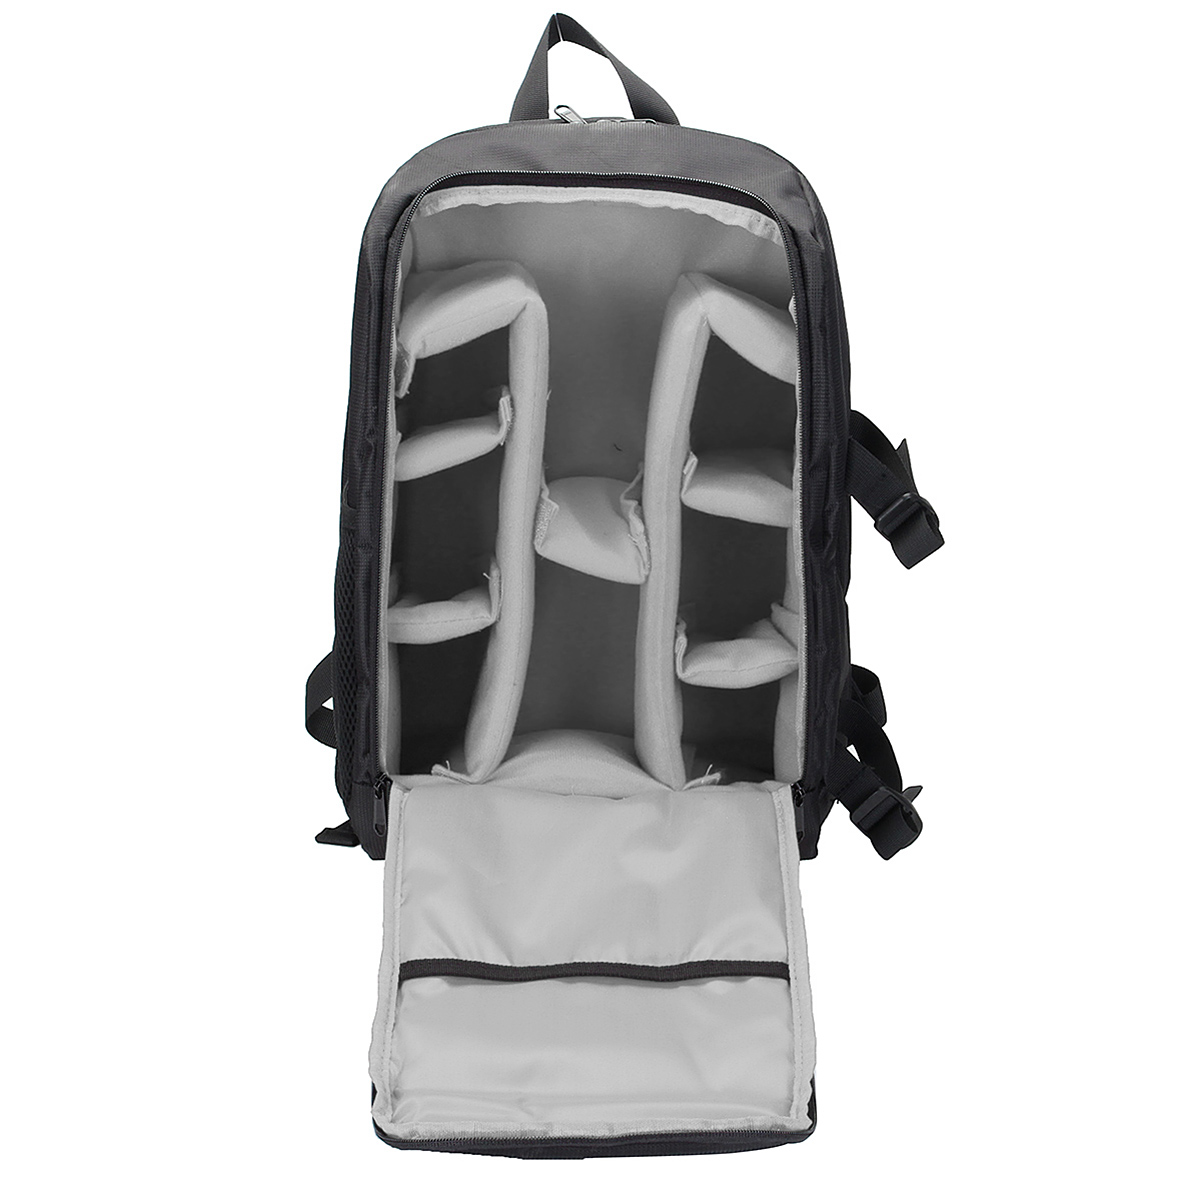 Waterproof Backpack Shoulder Bag Laptop Case For DSLR Camera Lens Accessories 16